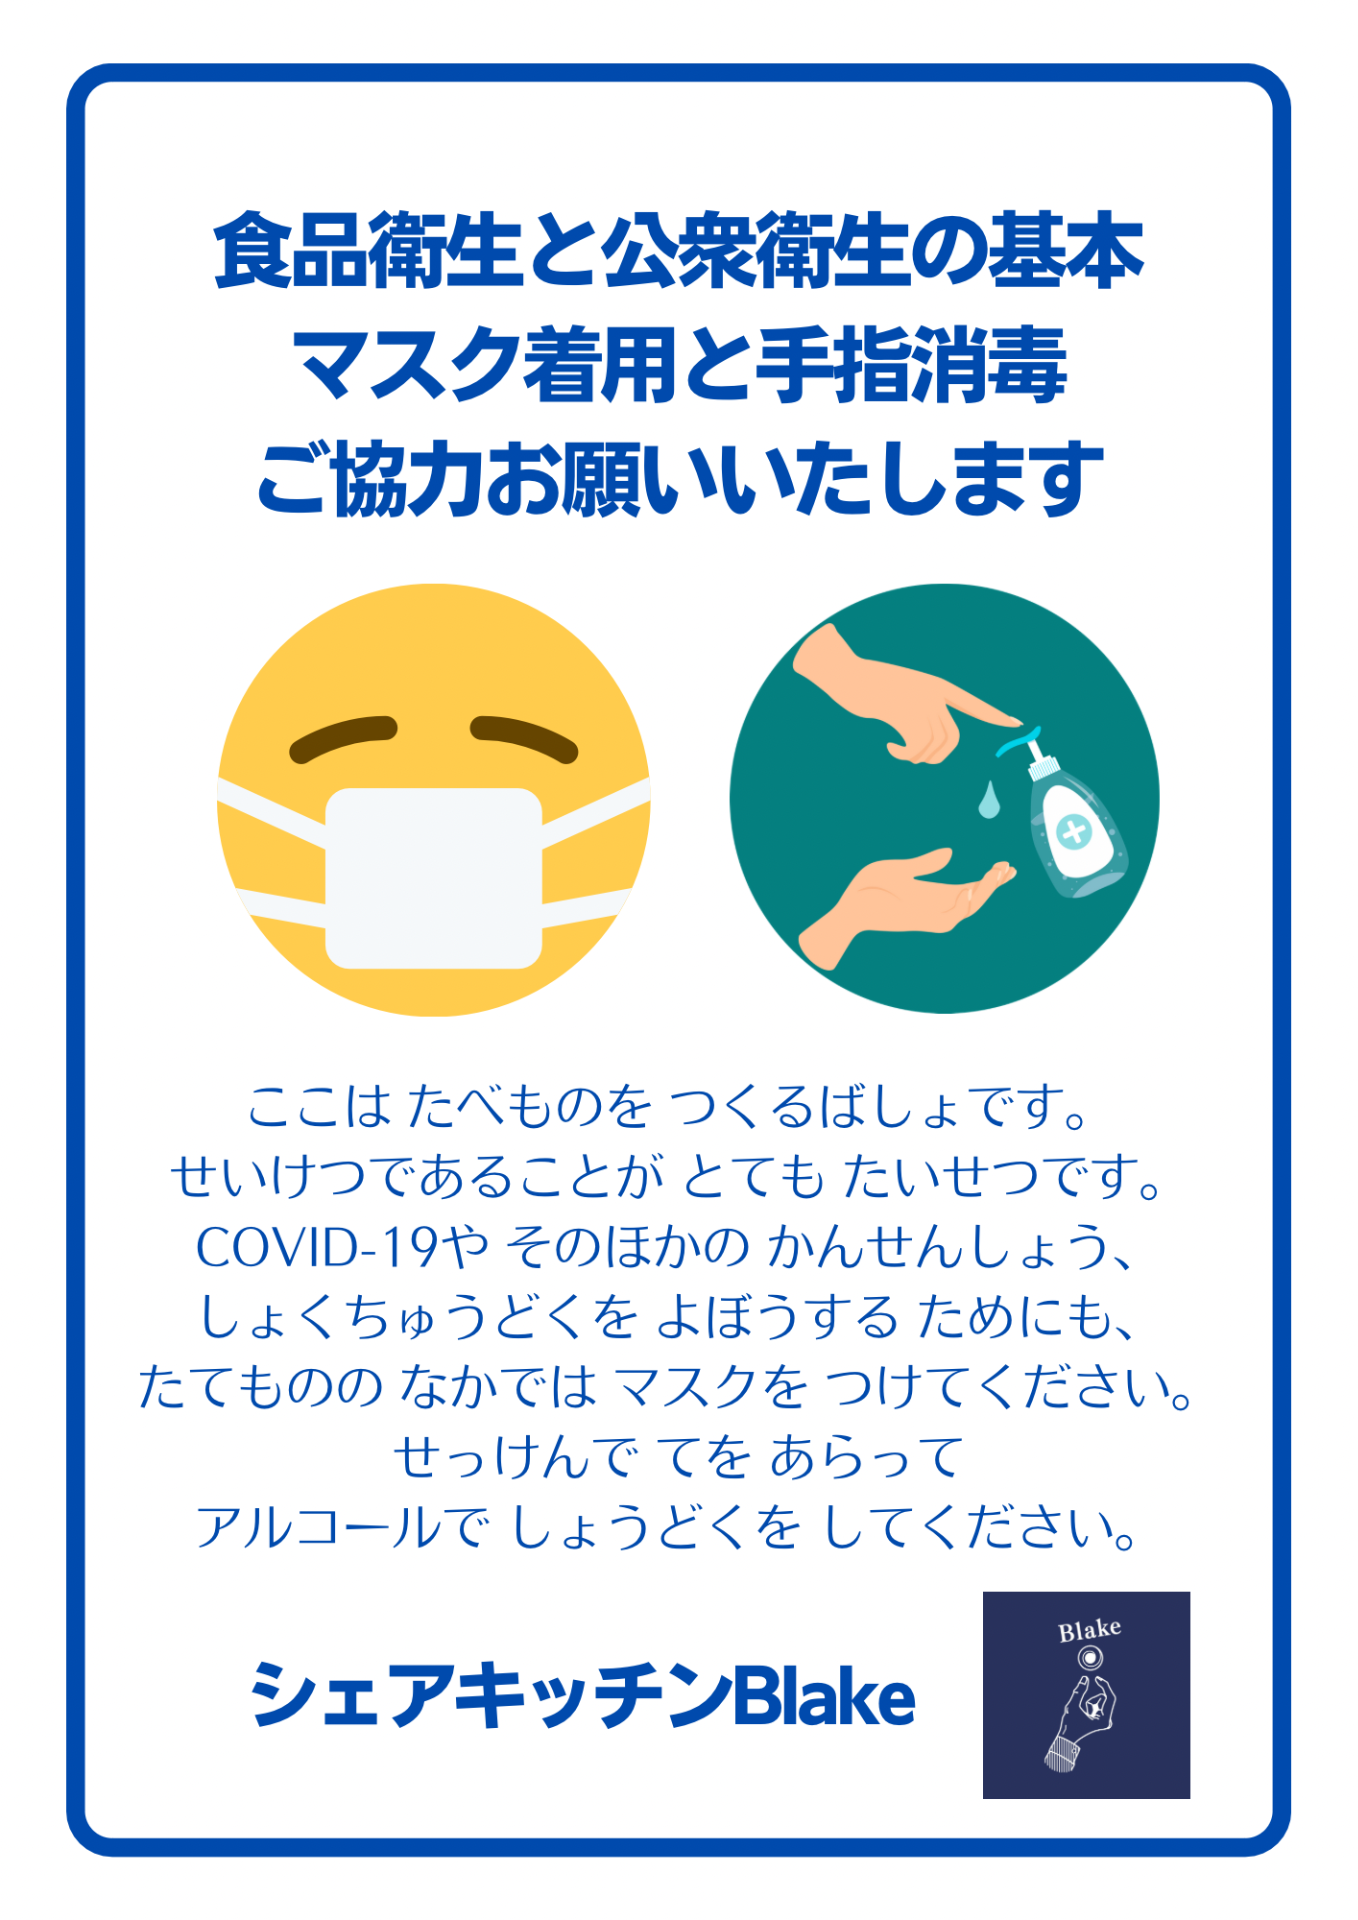 食品衛生と公衆衛生の基本 マスク着用と手指消毒 ご協力お願いいたします ここはたべものをつくるばしょです。 せいけつであることがとてもたいせつです。 COVID-19やそのほかのかんせんしょう、 しょくちゅうどくをよぼうするためにも、 たてもののなかではマスクをつけてください。 せっけんでてをあらって アルコールでしょうどくをしてください。 シェアキッチンBlake